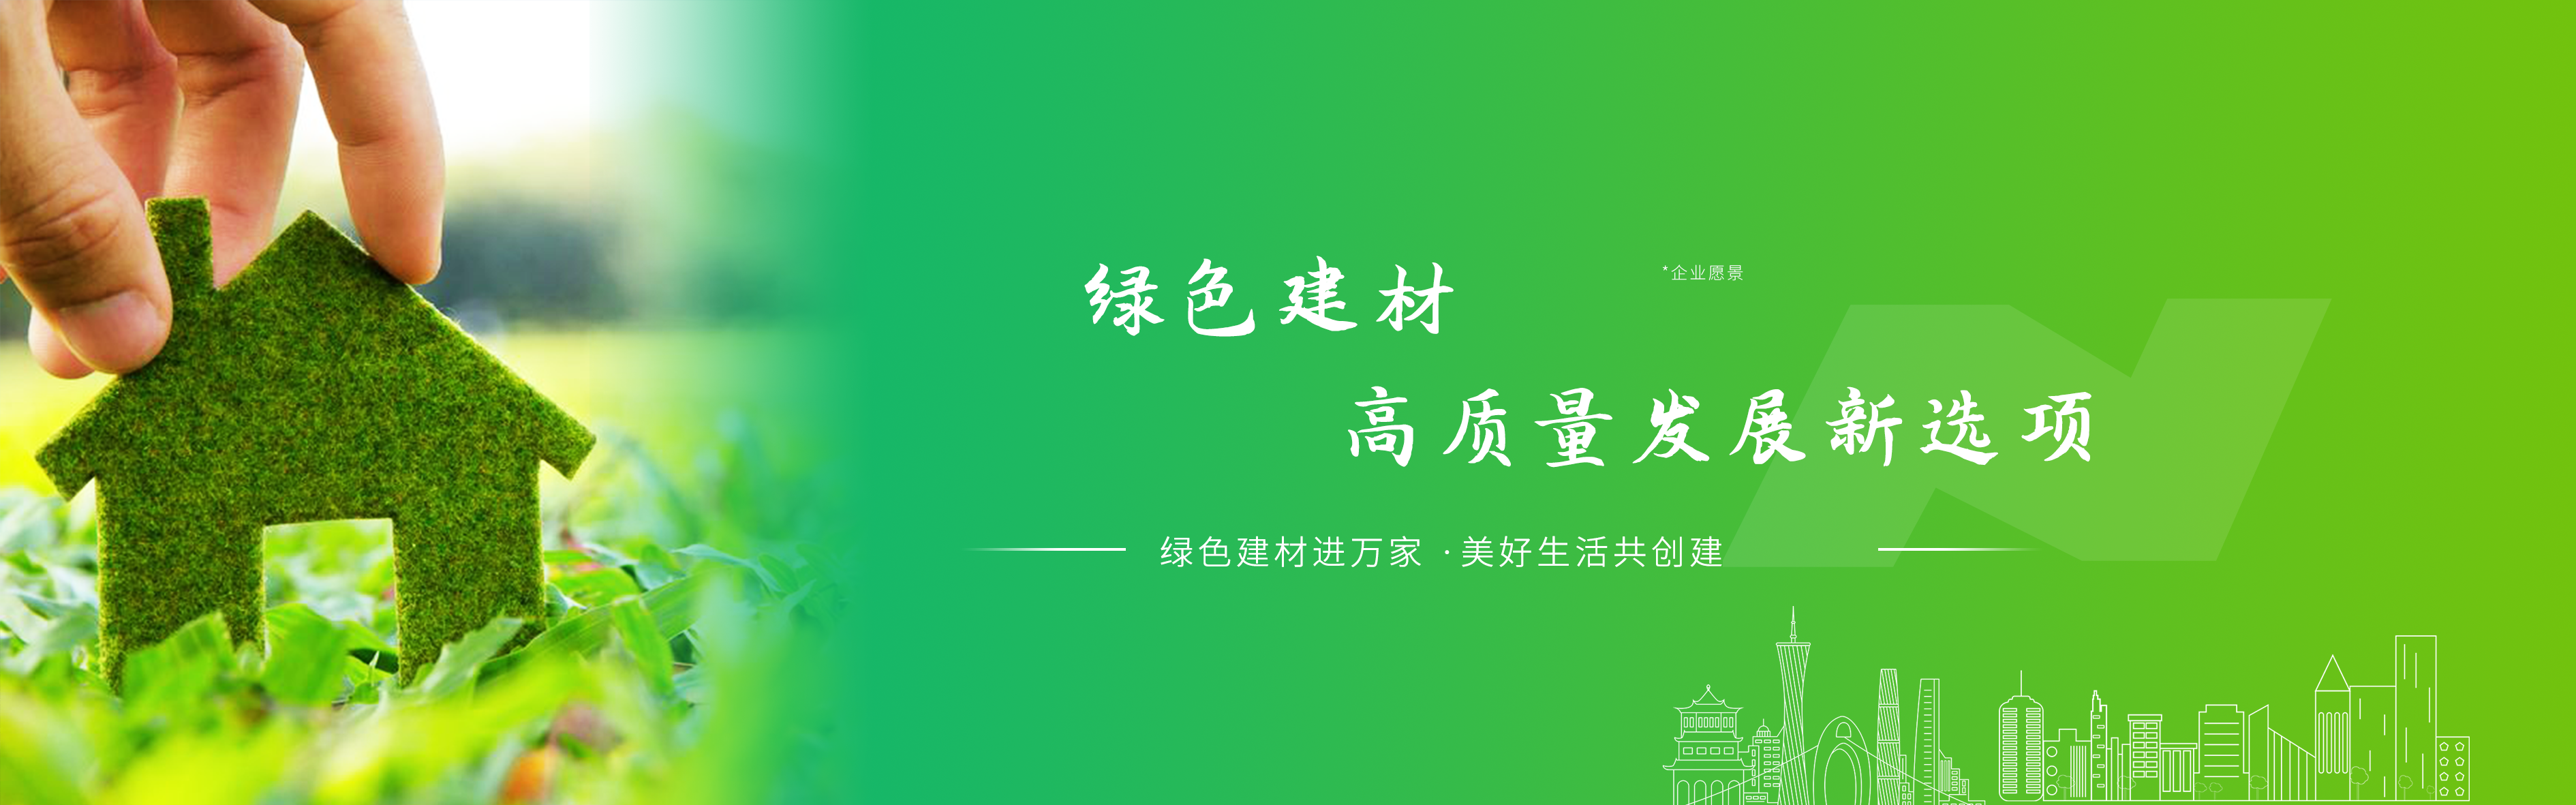 廣東禹能建材科技股份有限公司榮獲中國綠色建材產品認證證書